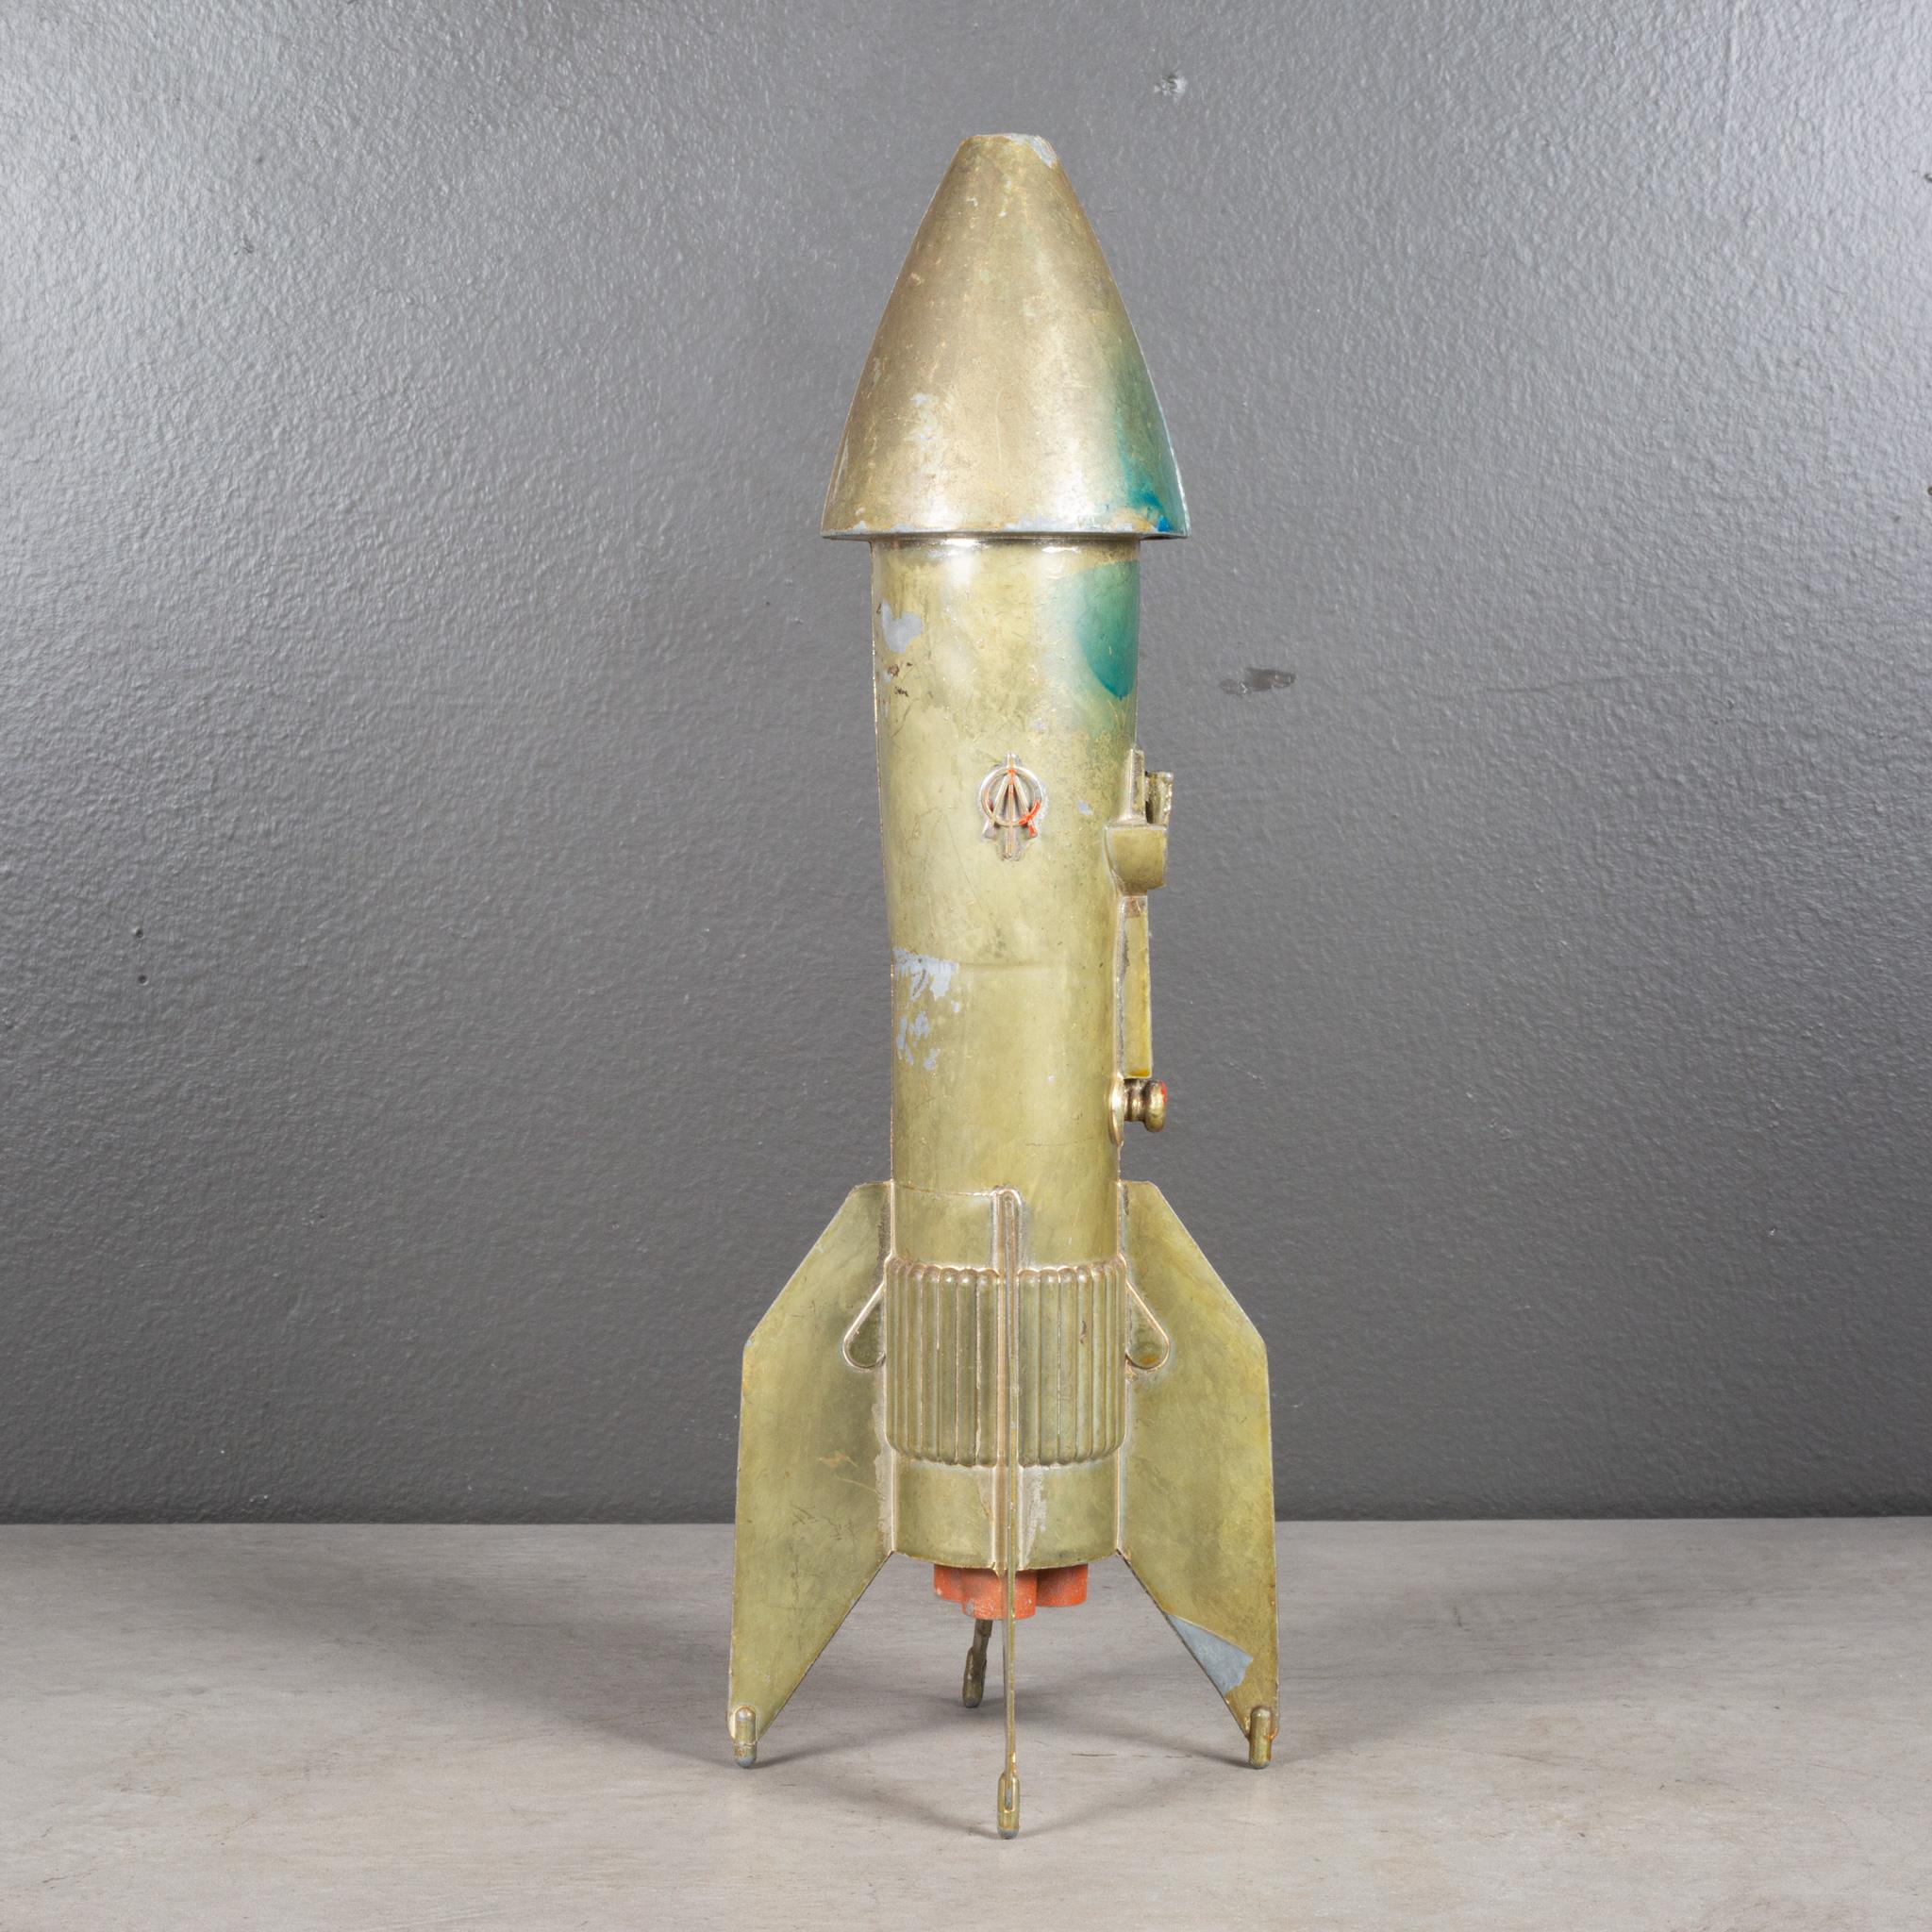 Américain Vintage Astro Rocket Ship Savings Bank c.1957  (LIVRAISON GRATUITE) en vente